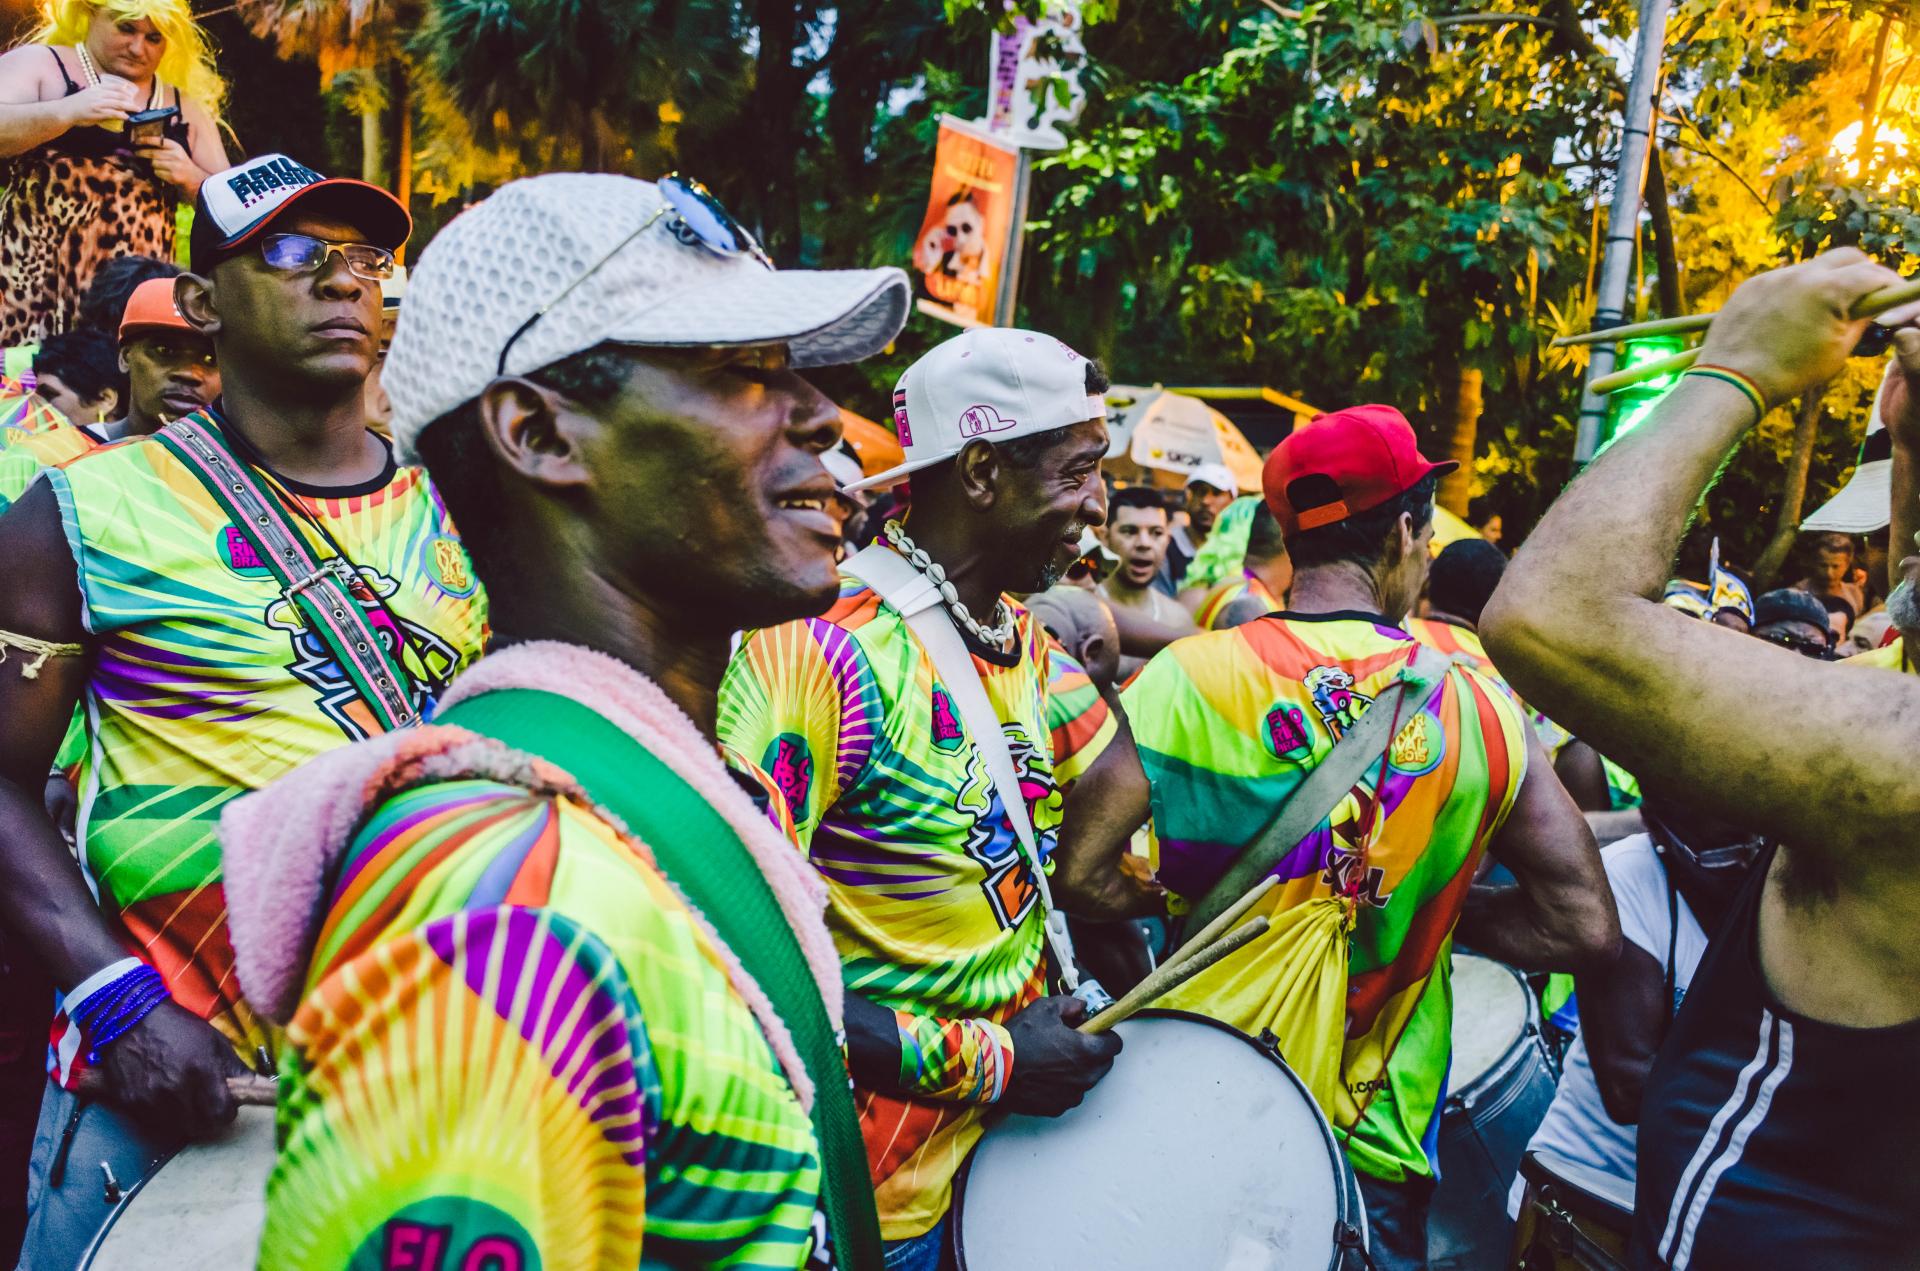 Street Carnival in Brazil